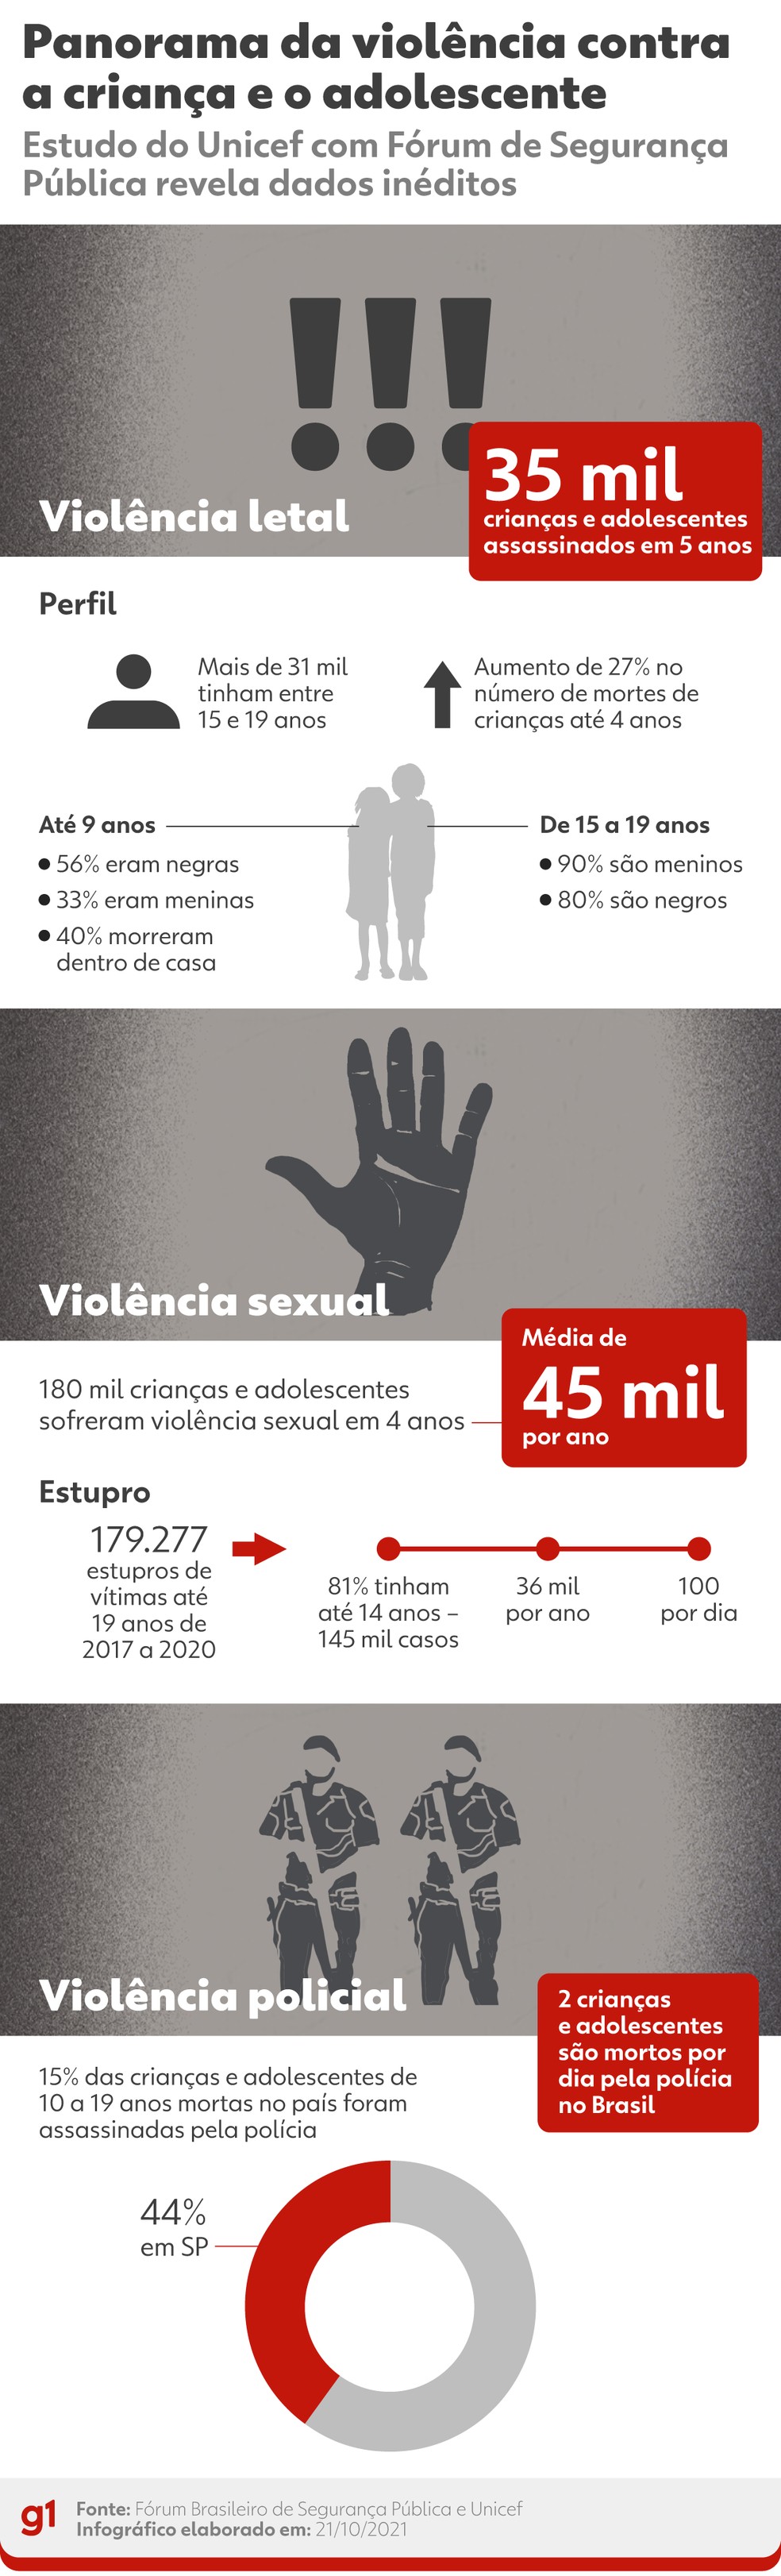 Principais pontos do Panorama da violência letal e sexual contra crianças e adolescentes no Brasil — Foto: Arte/g1